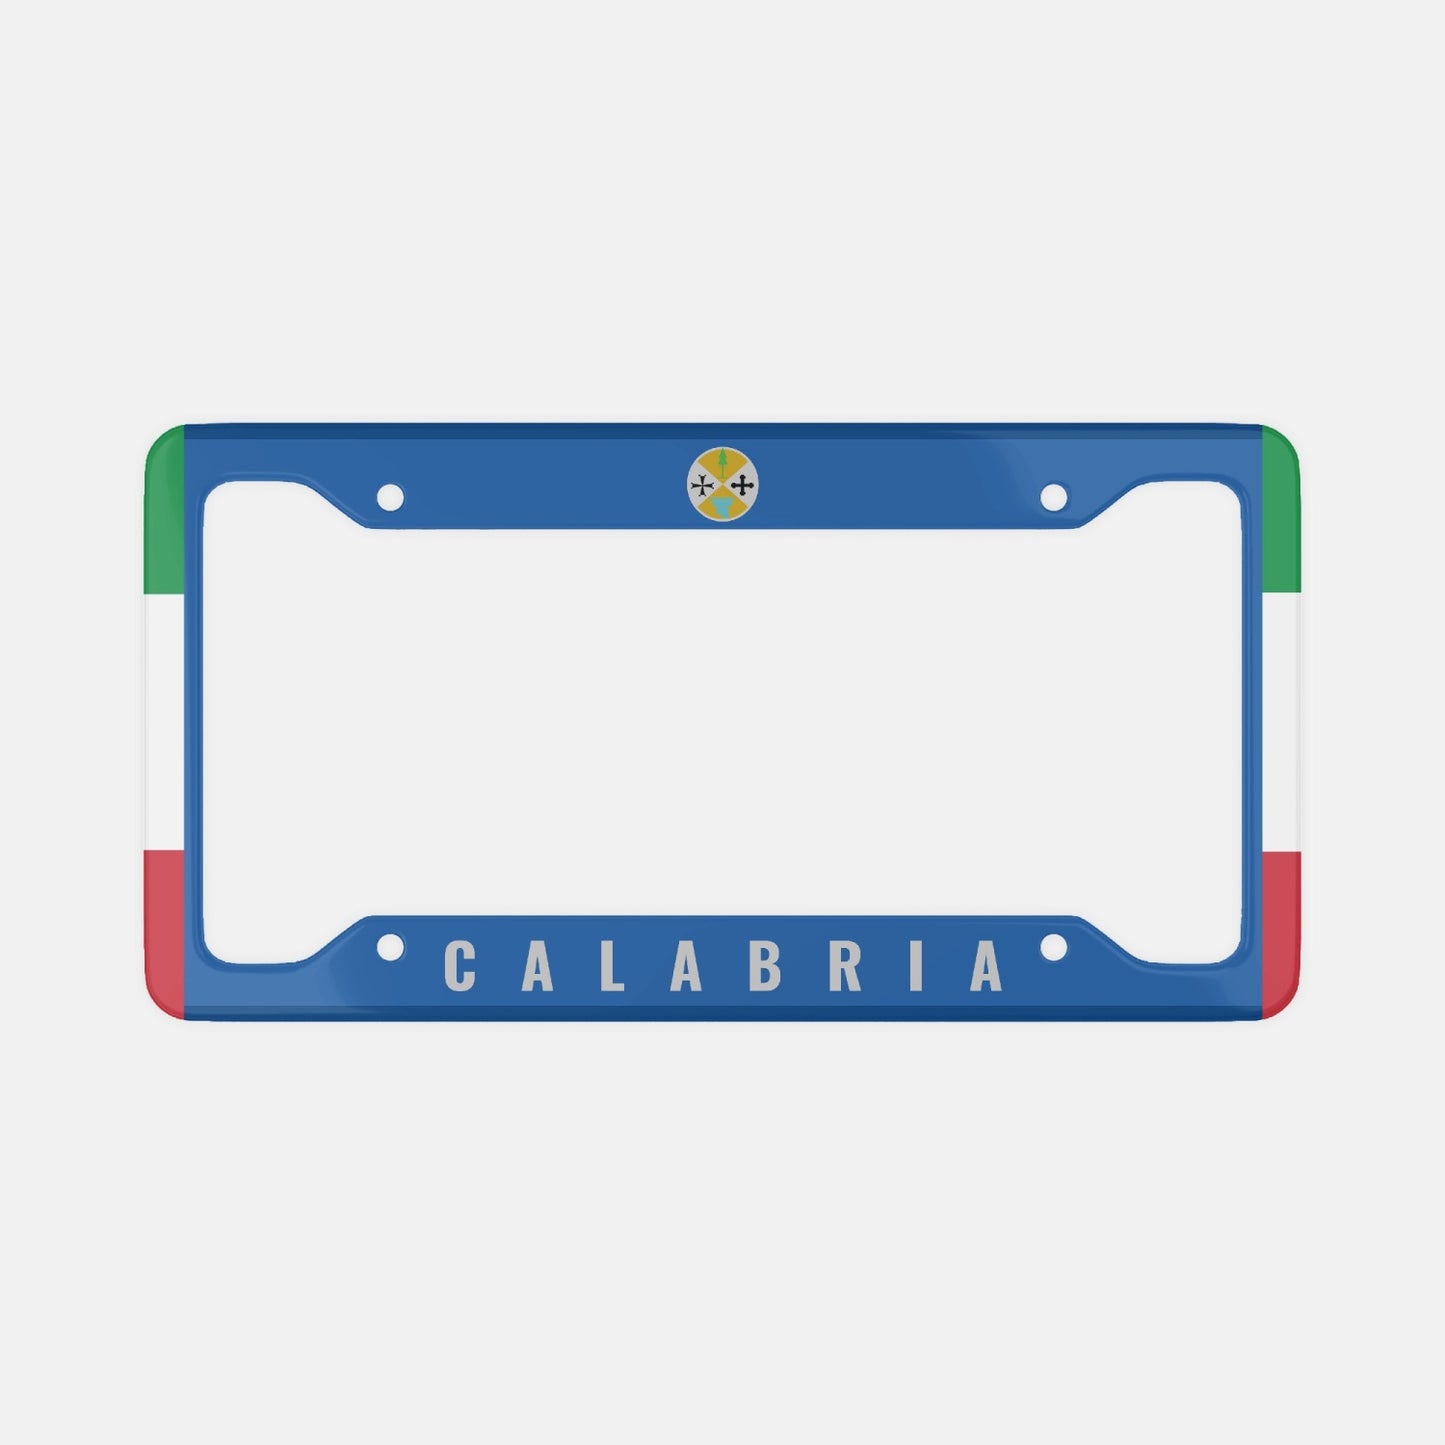 Calabria - License Plate Frame